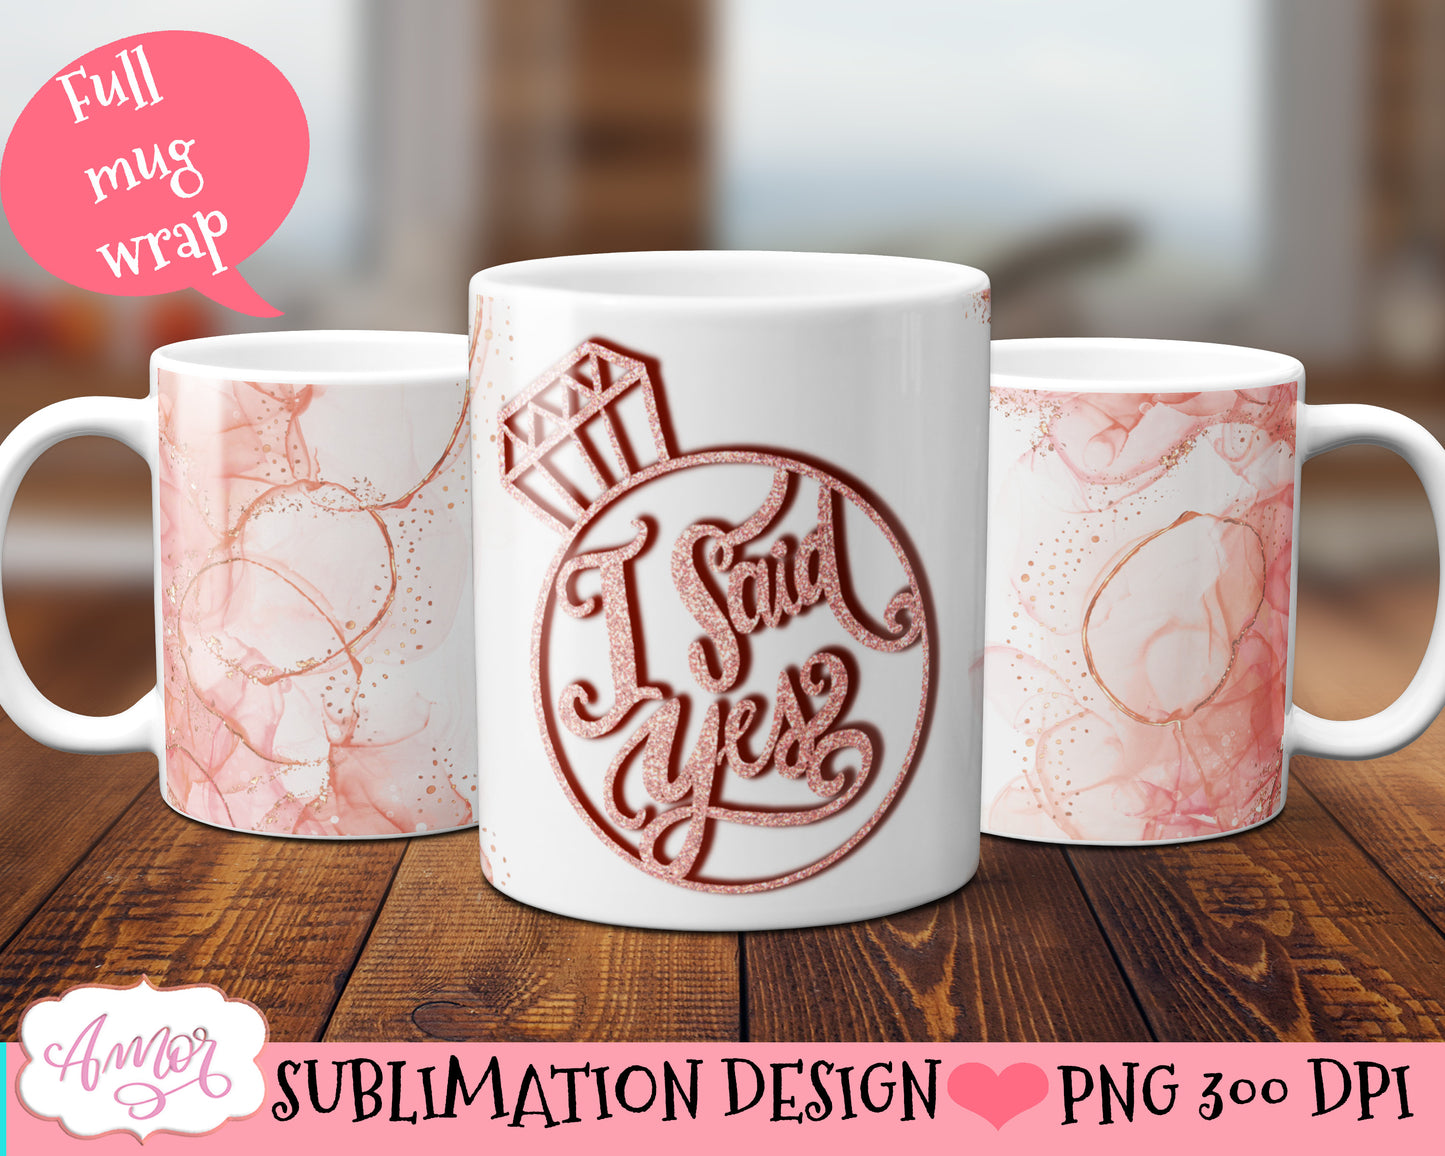 Engagement mug wrap PNG sublimation